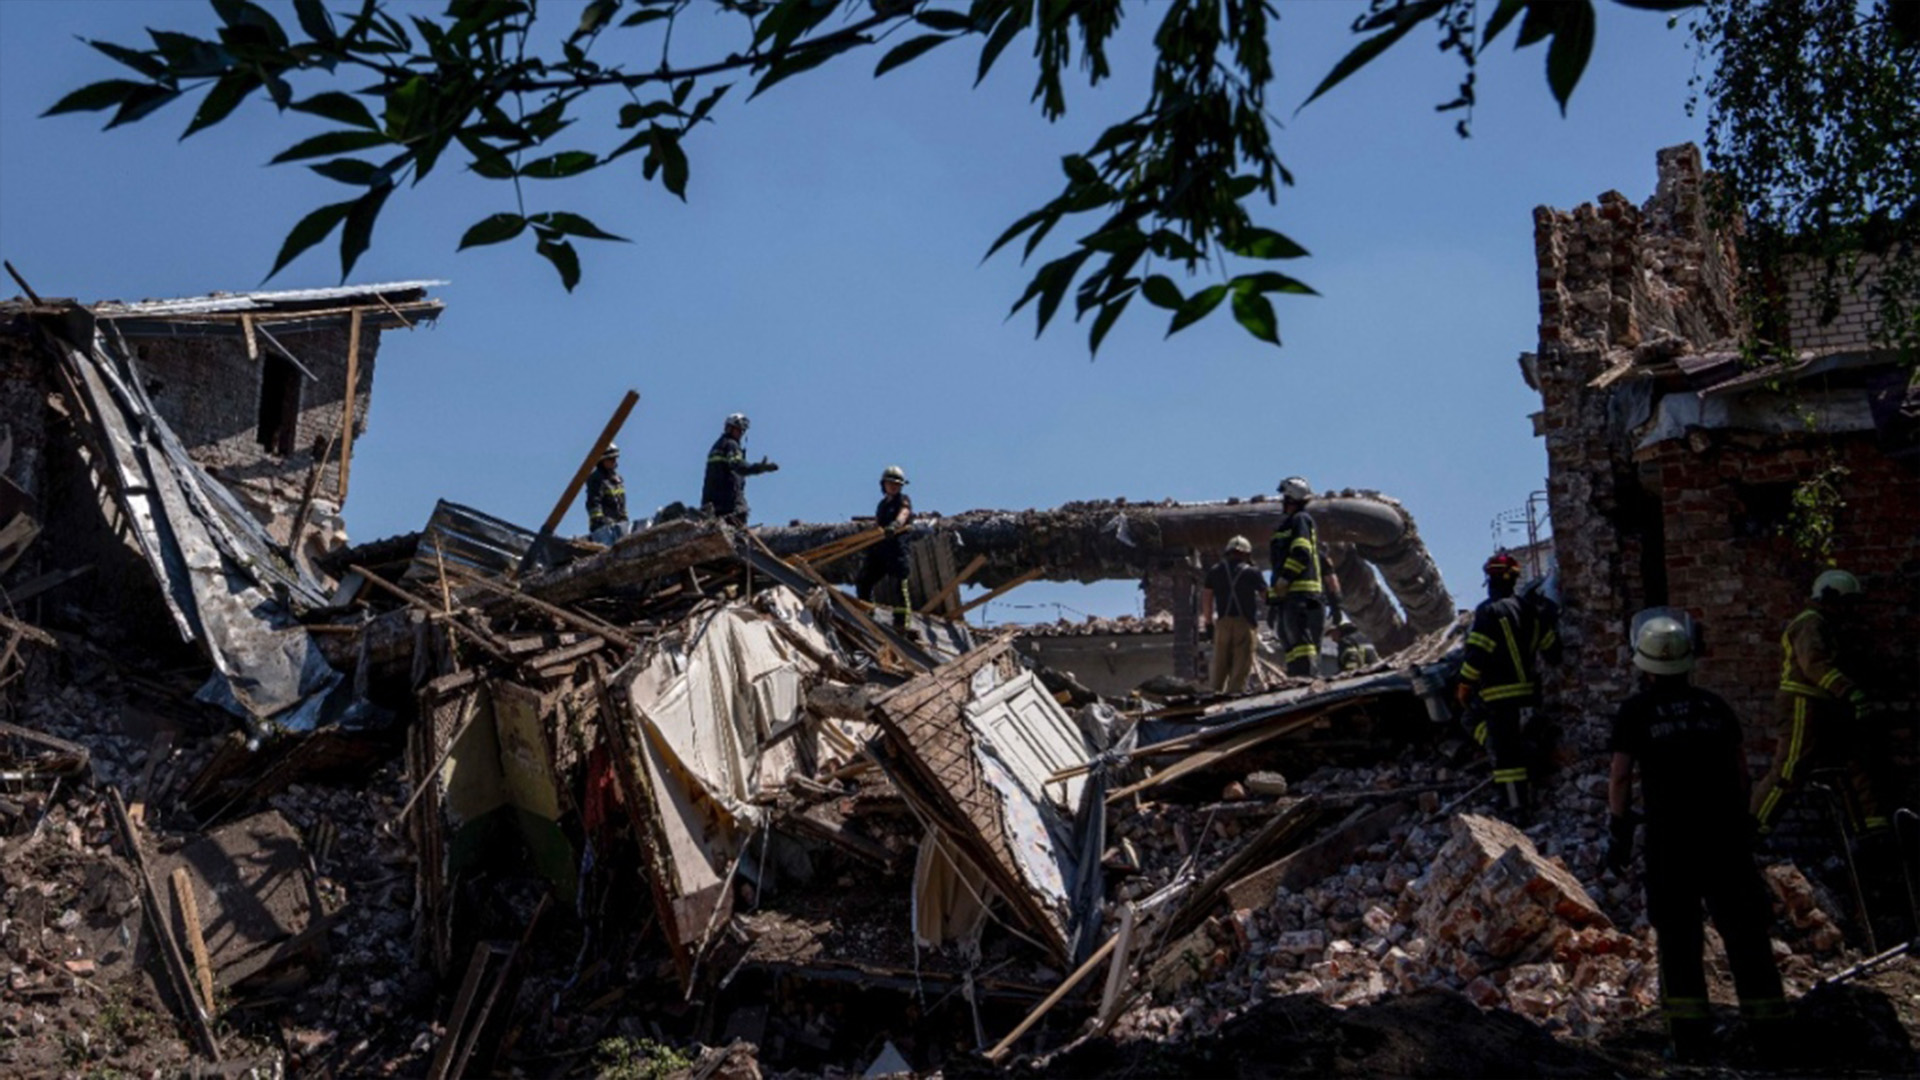 Des secouristes se tiennent sur les décombres sur les lieux après une frappe de missile dans un immeuble résidentiel à Chasiv Yar, dans la région de Donetsk, dans l'est de l'Ukraine, le 10 juillet 2022.